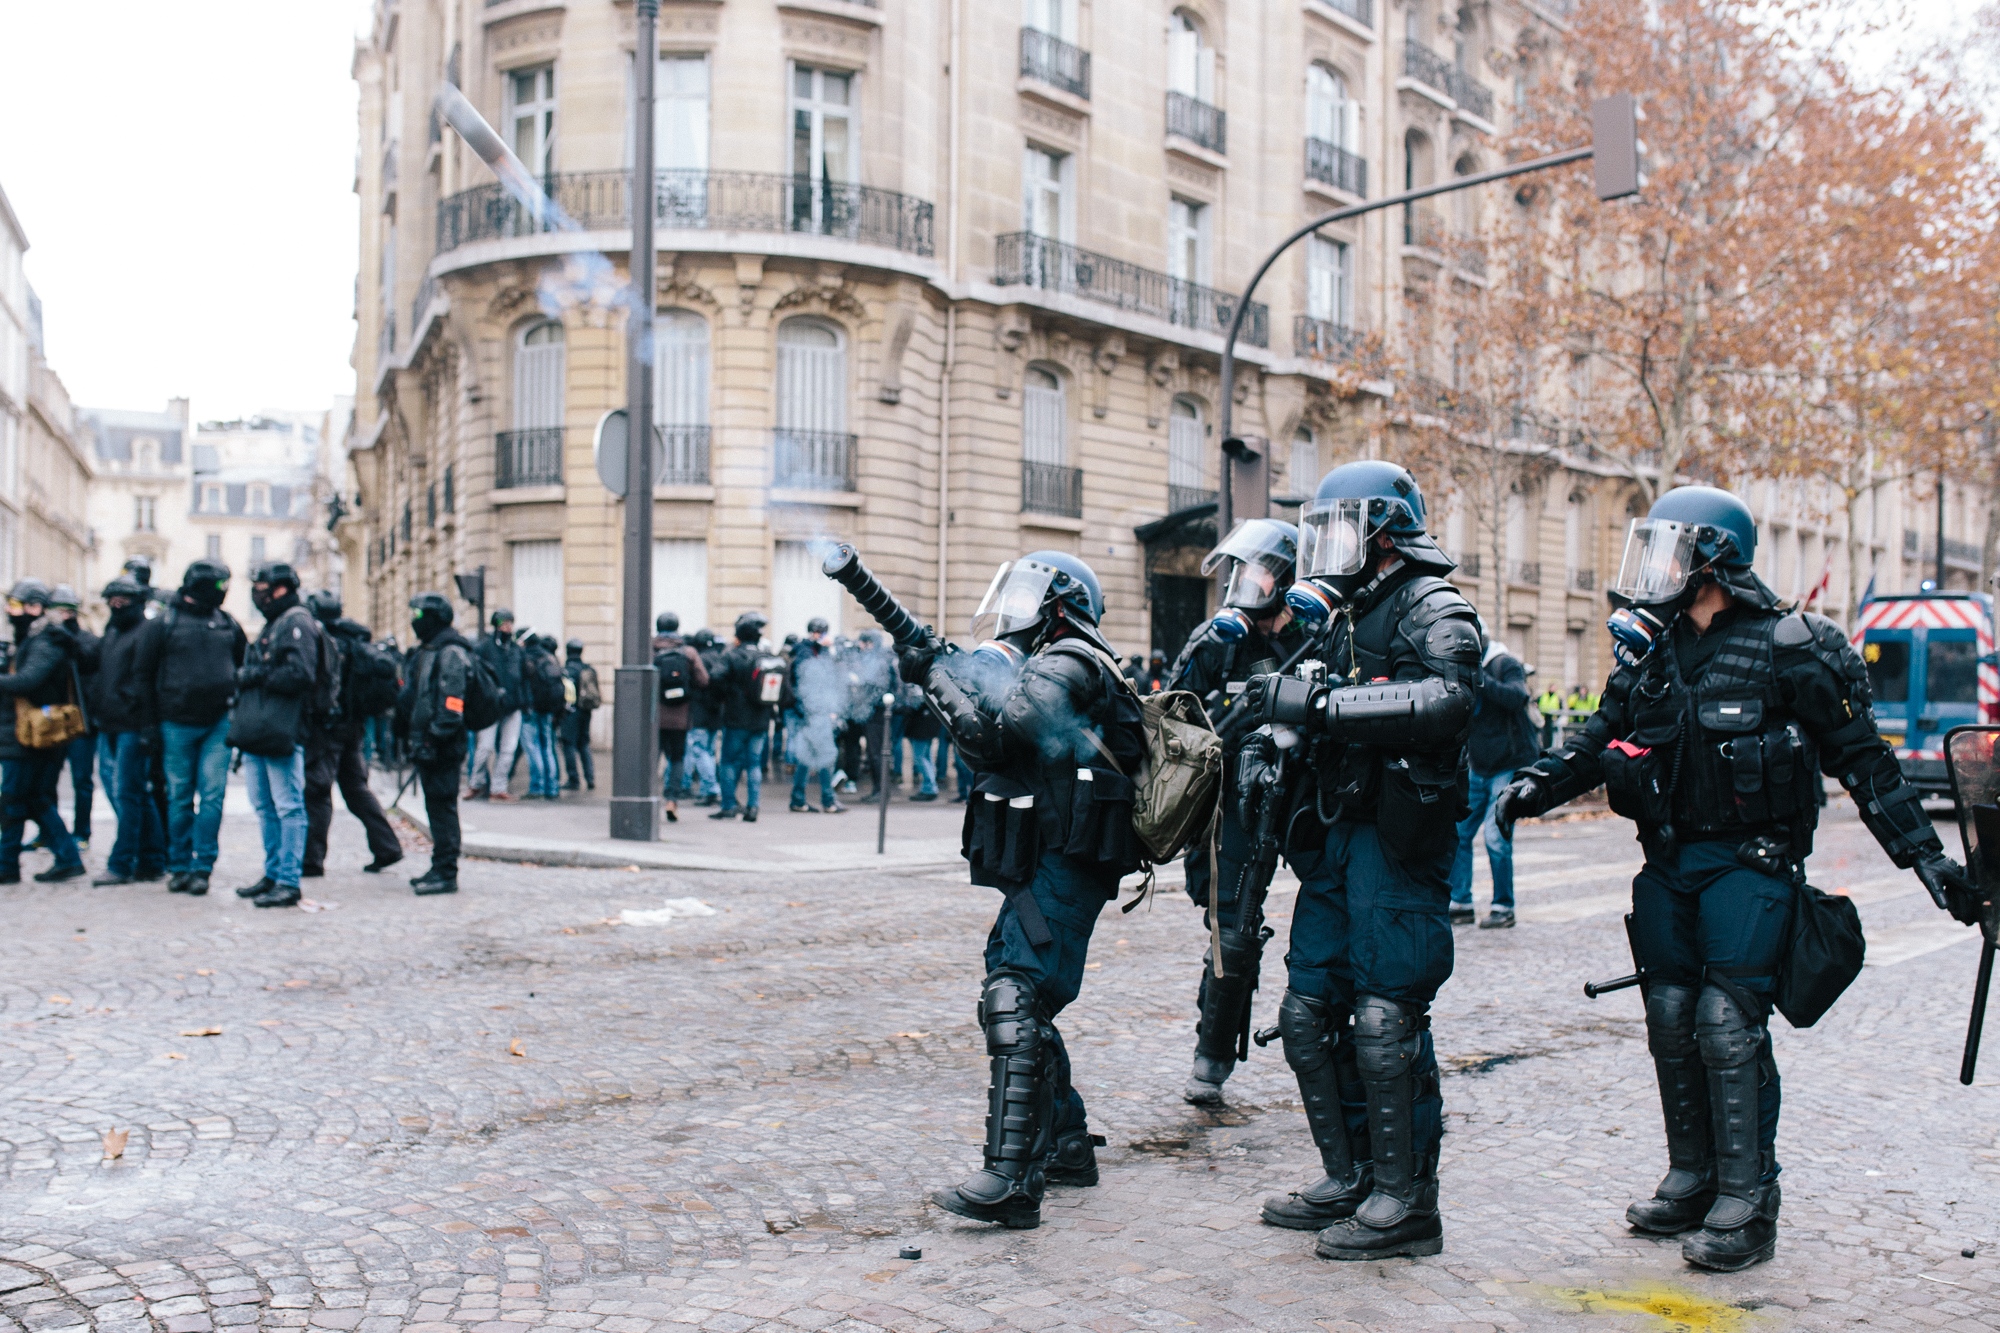 Gilets Jaunes Protest in Paris - 